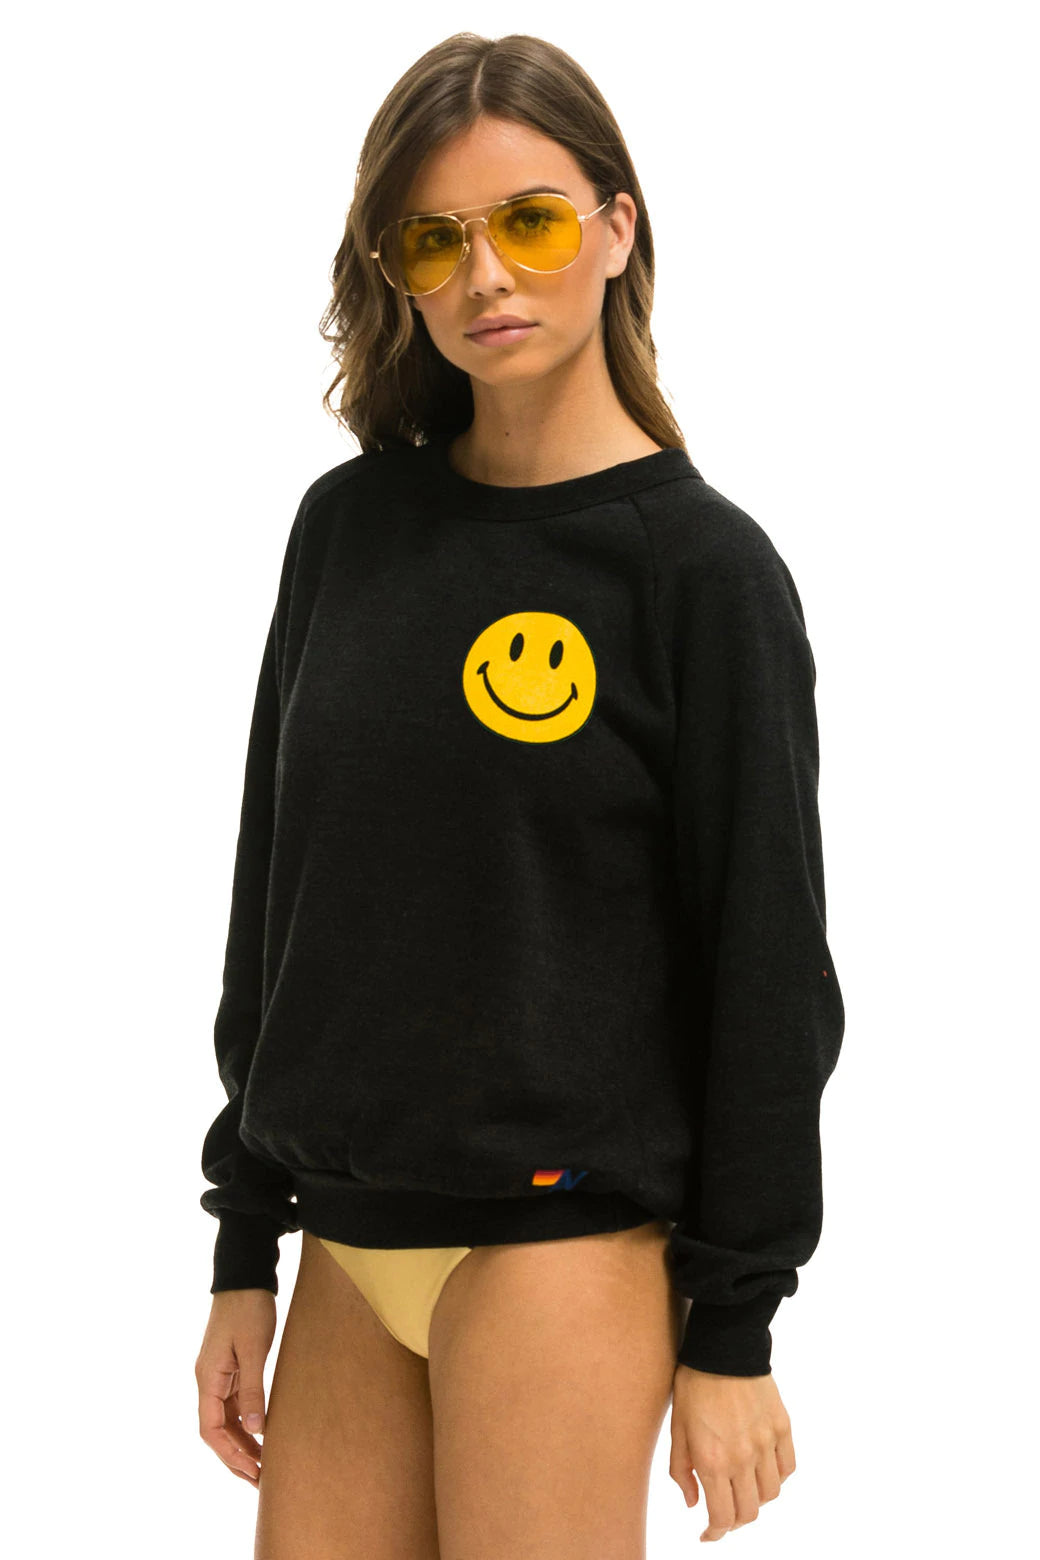 Smiley 2 Crew Sweatshirt